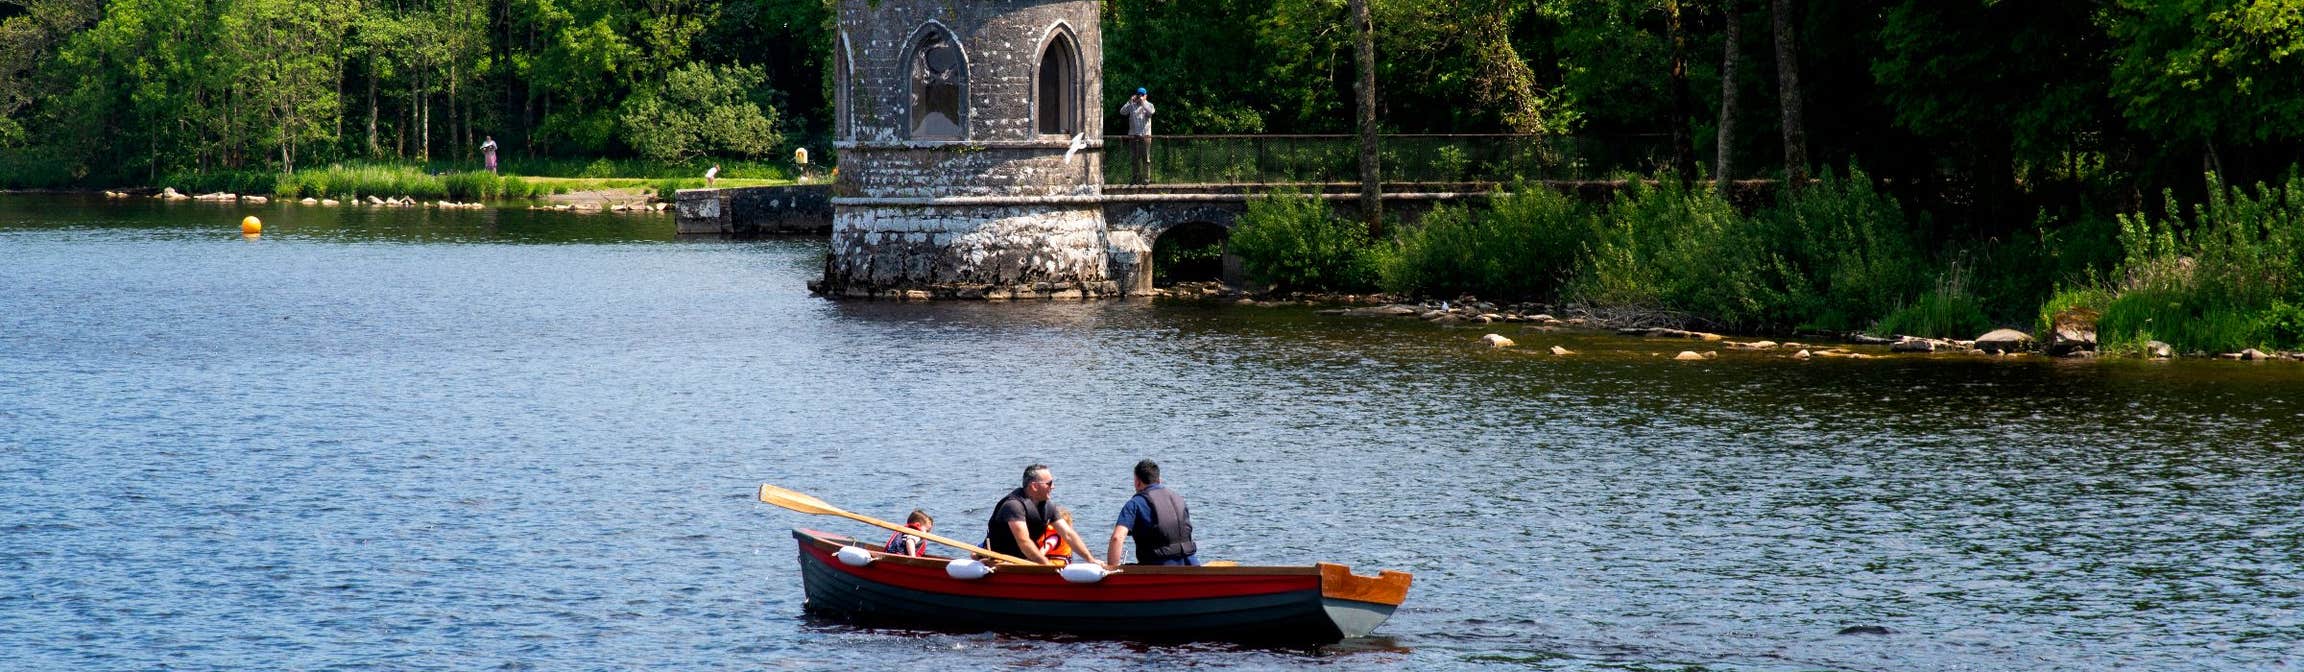 Canoe, Lough Key, County Roscommon